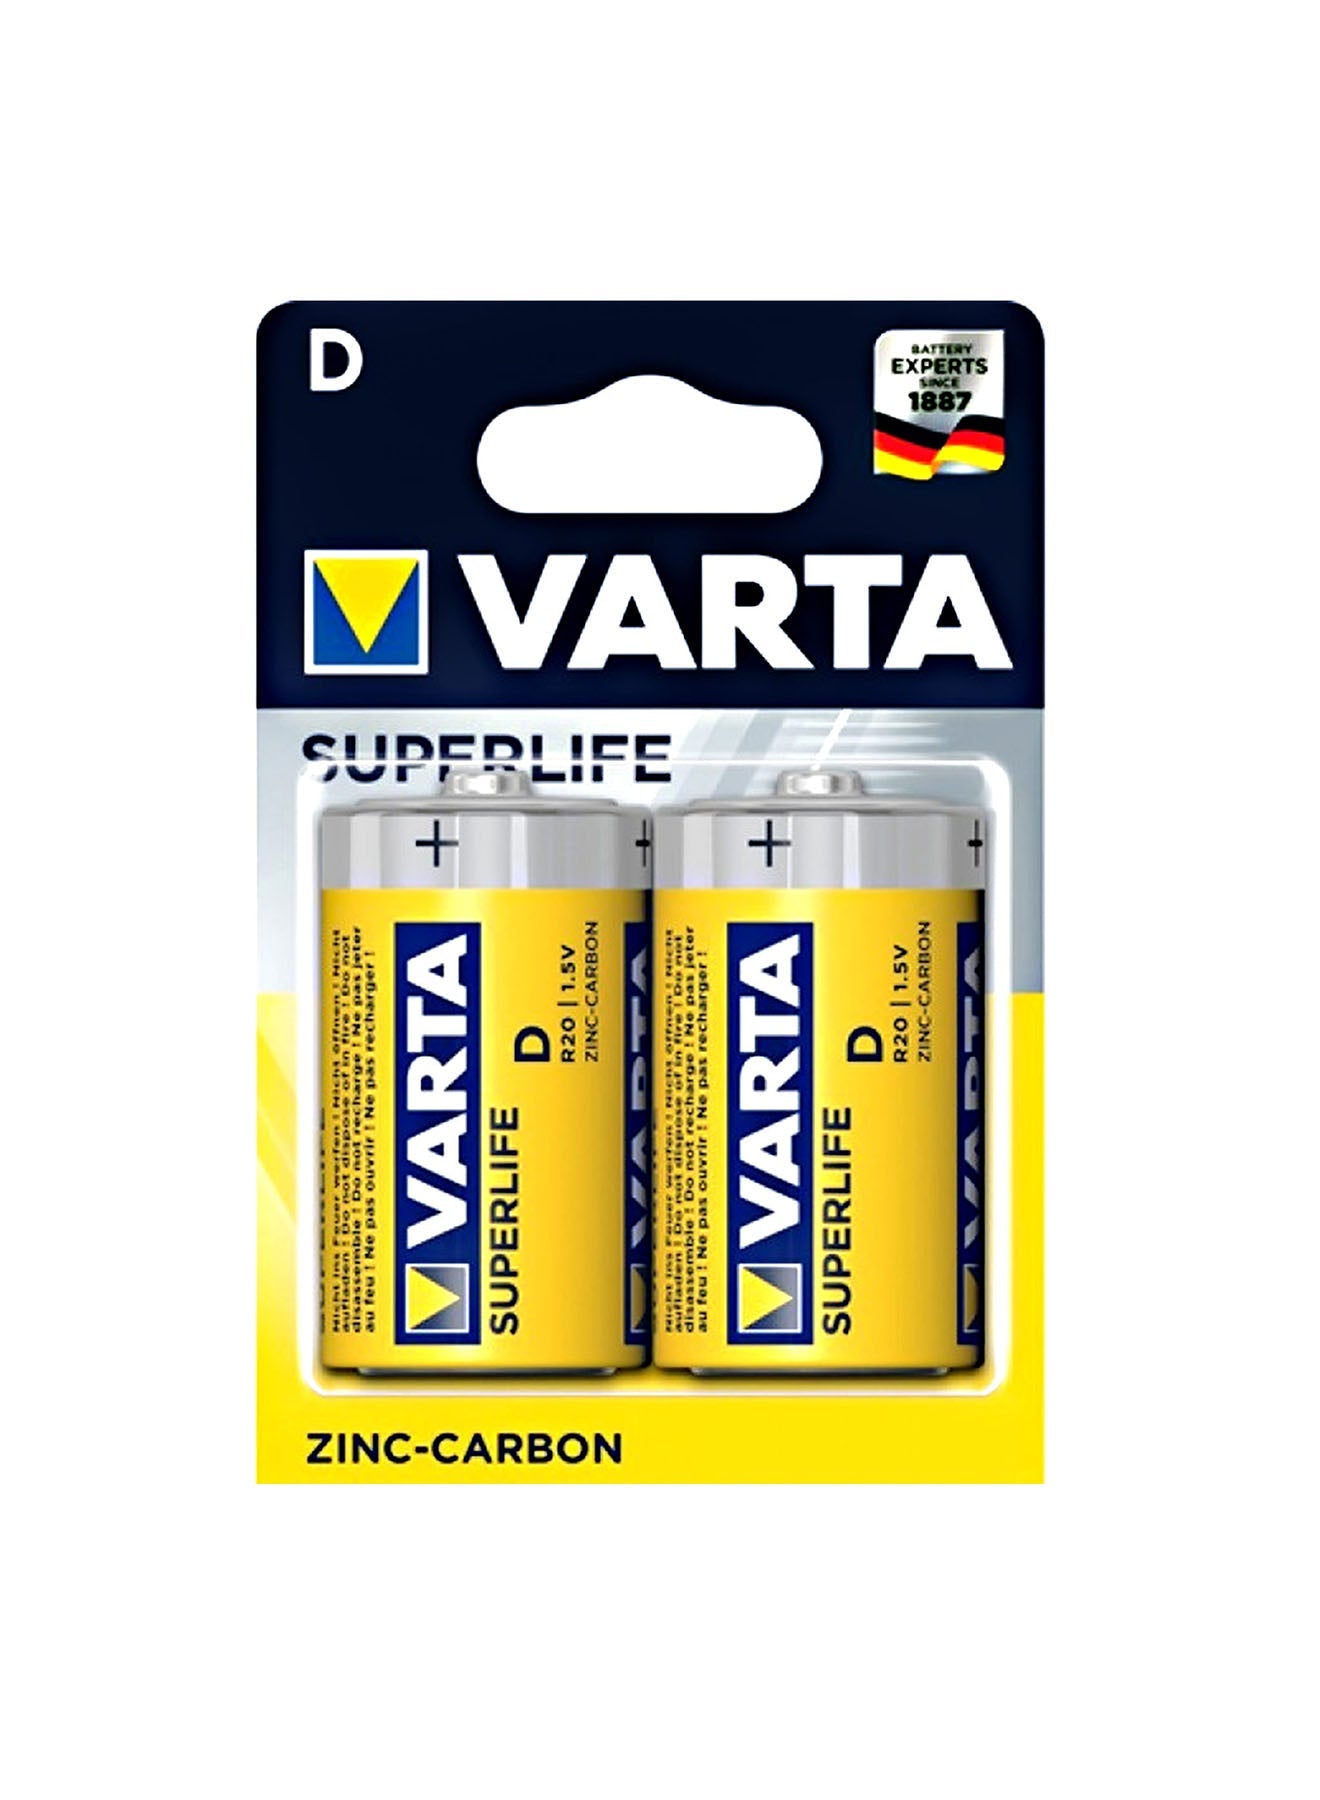 Varta Superlife R20D Battery 2 Unit Value Pack of 3 